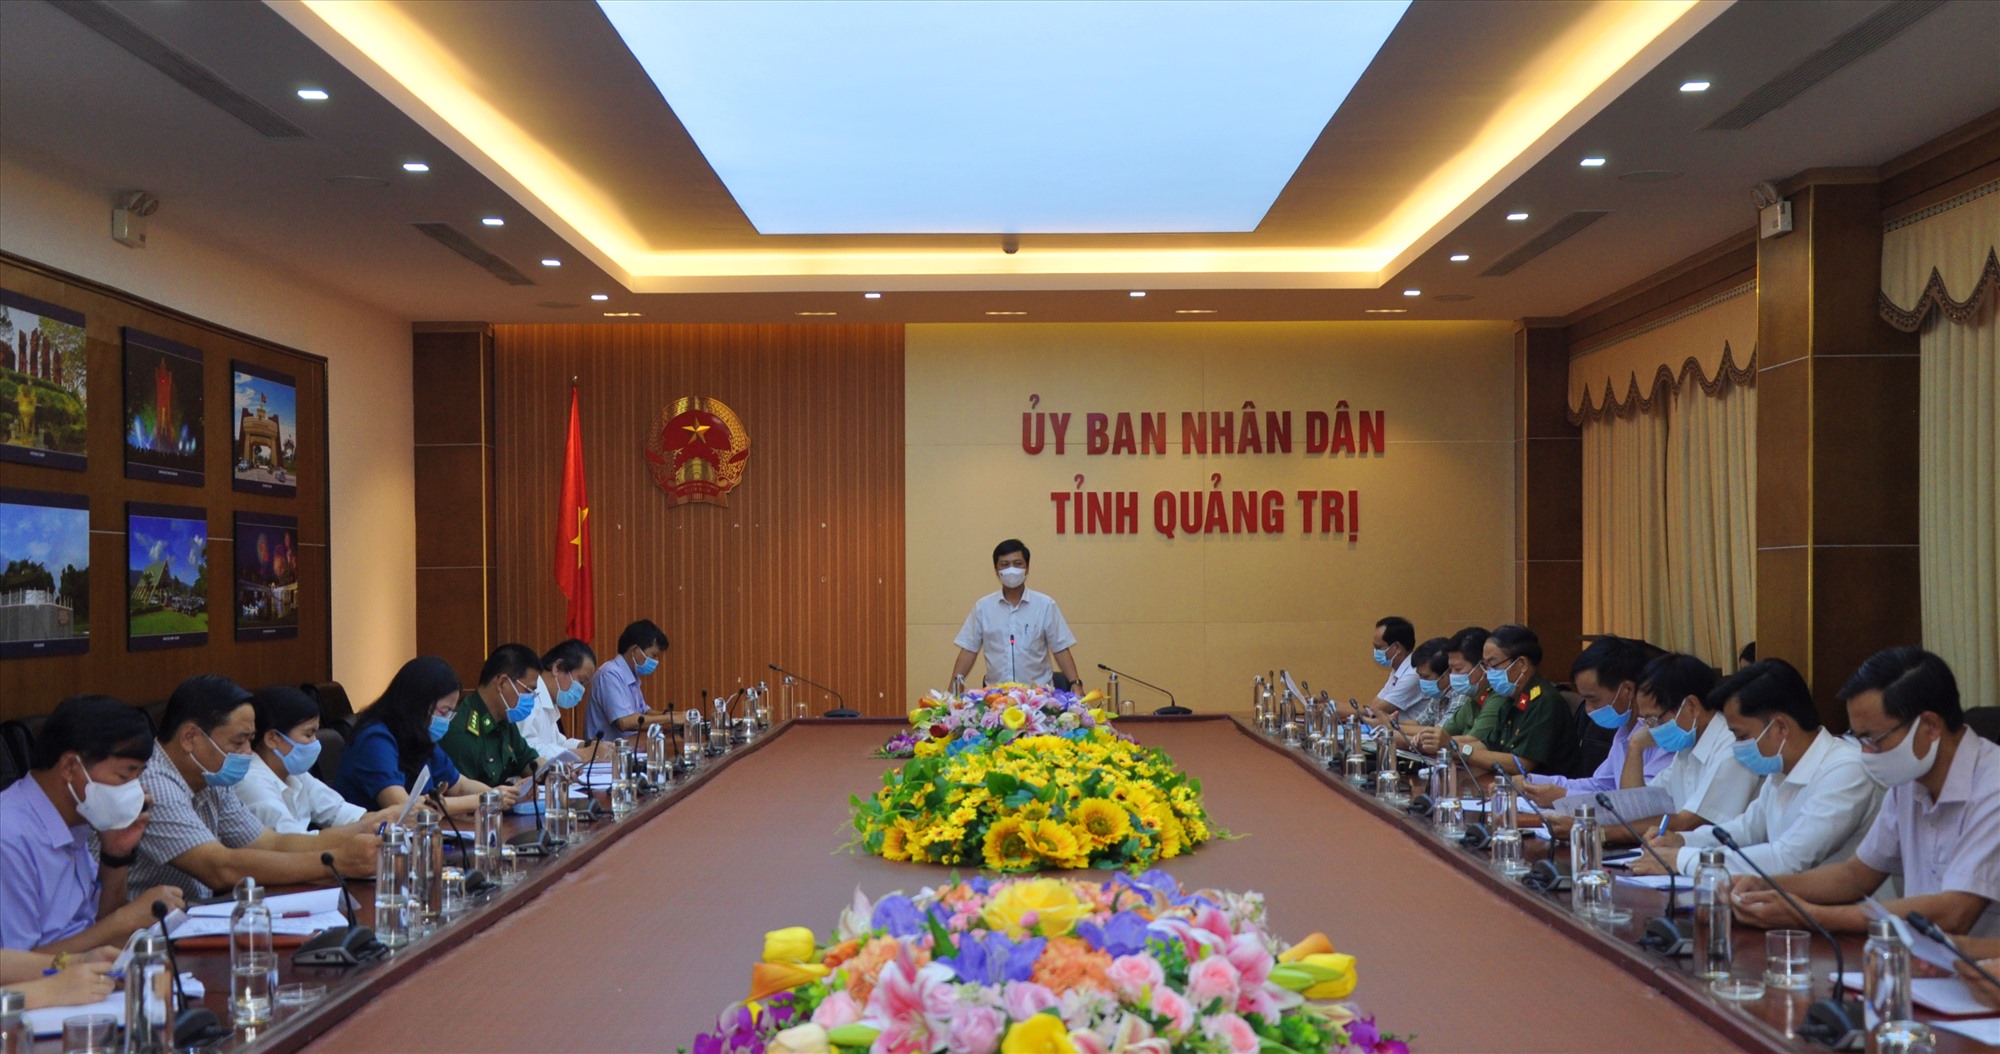 Phó Chủ tịch UBND tỉnh Hoàng Nam chỉ đạo chưa dỡ bỏ các biện pháp phòng, chống COVID-19 hiện nay - Ảnh: Q.H